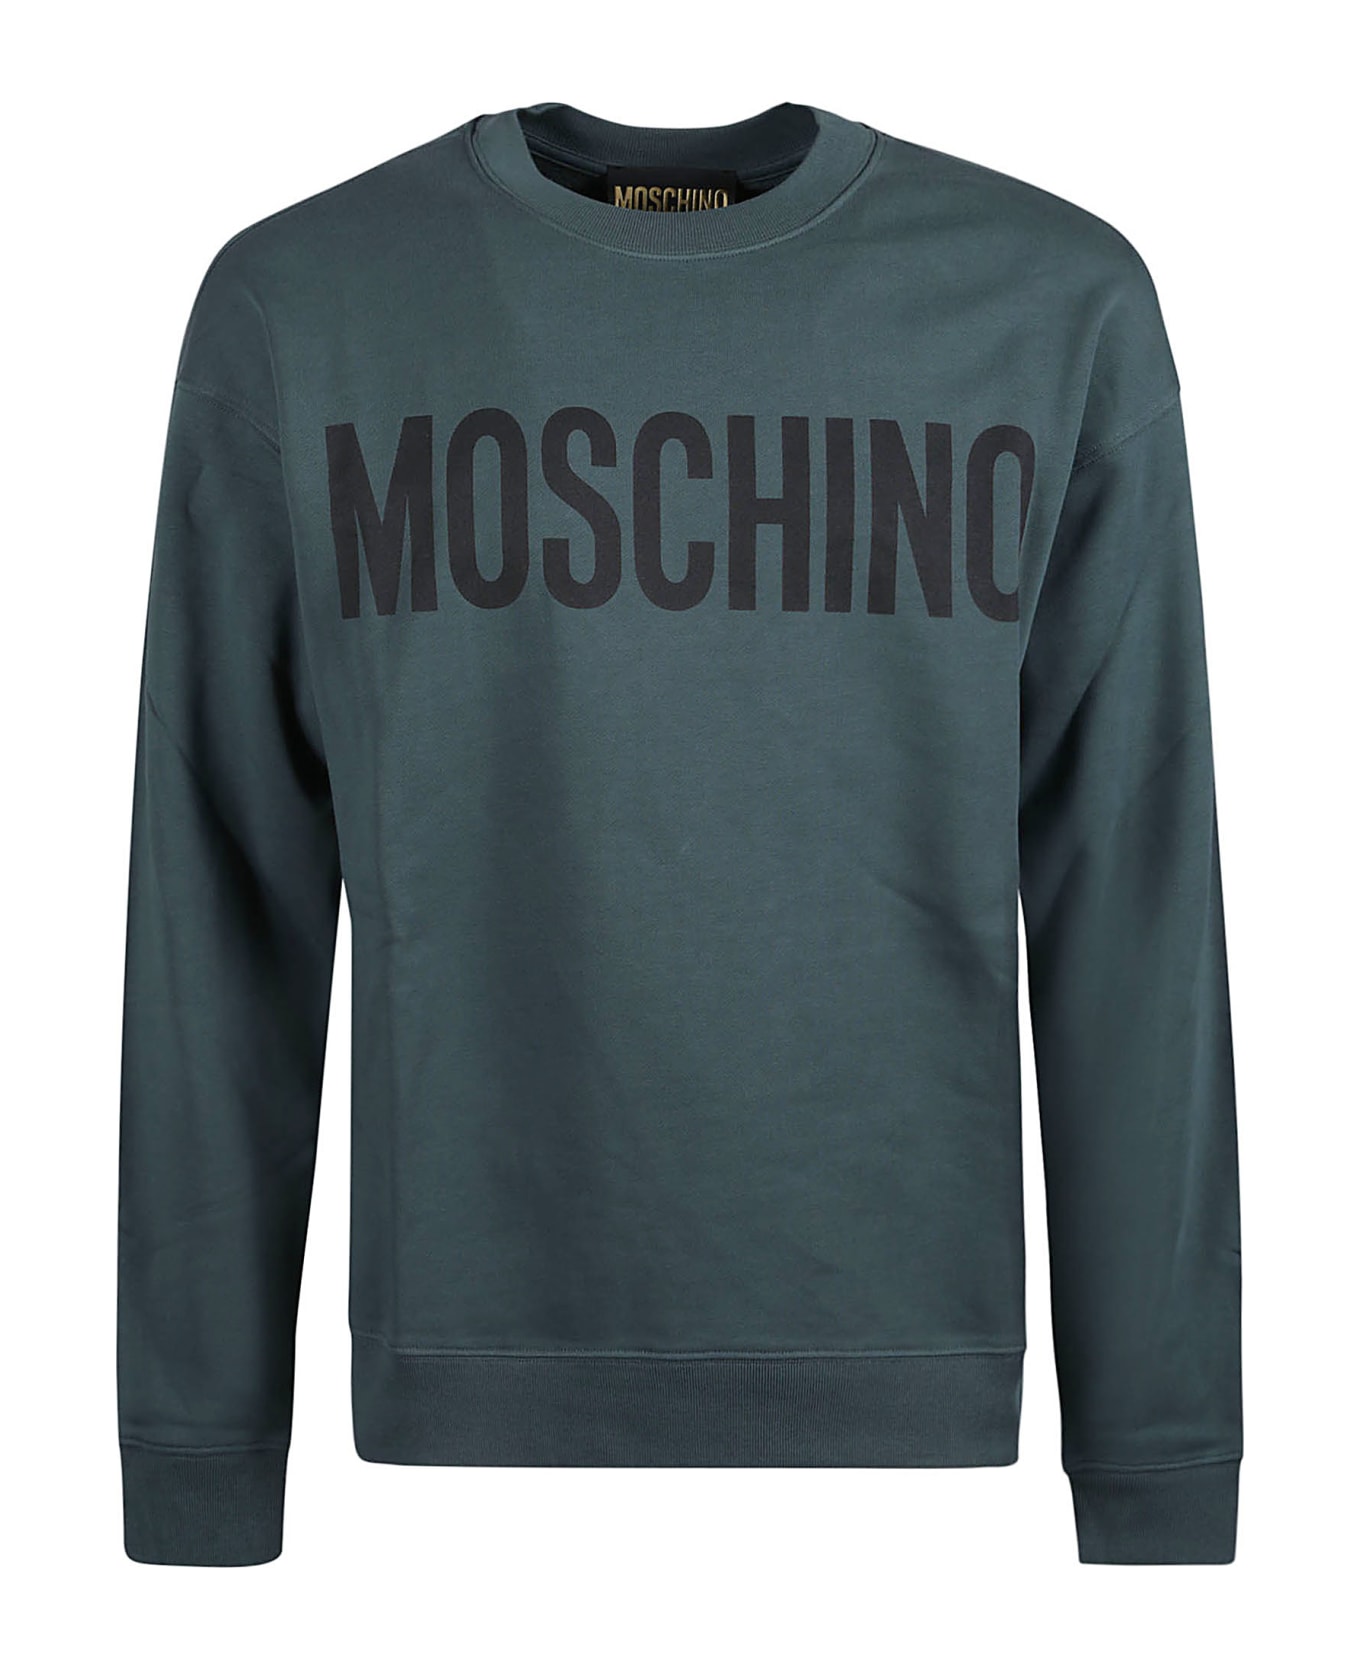 Moschino Logo Sweatshirt - Green